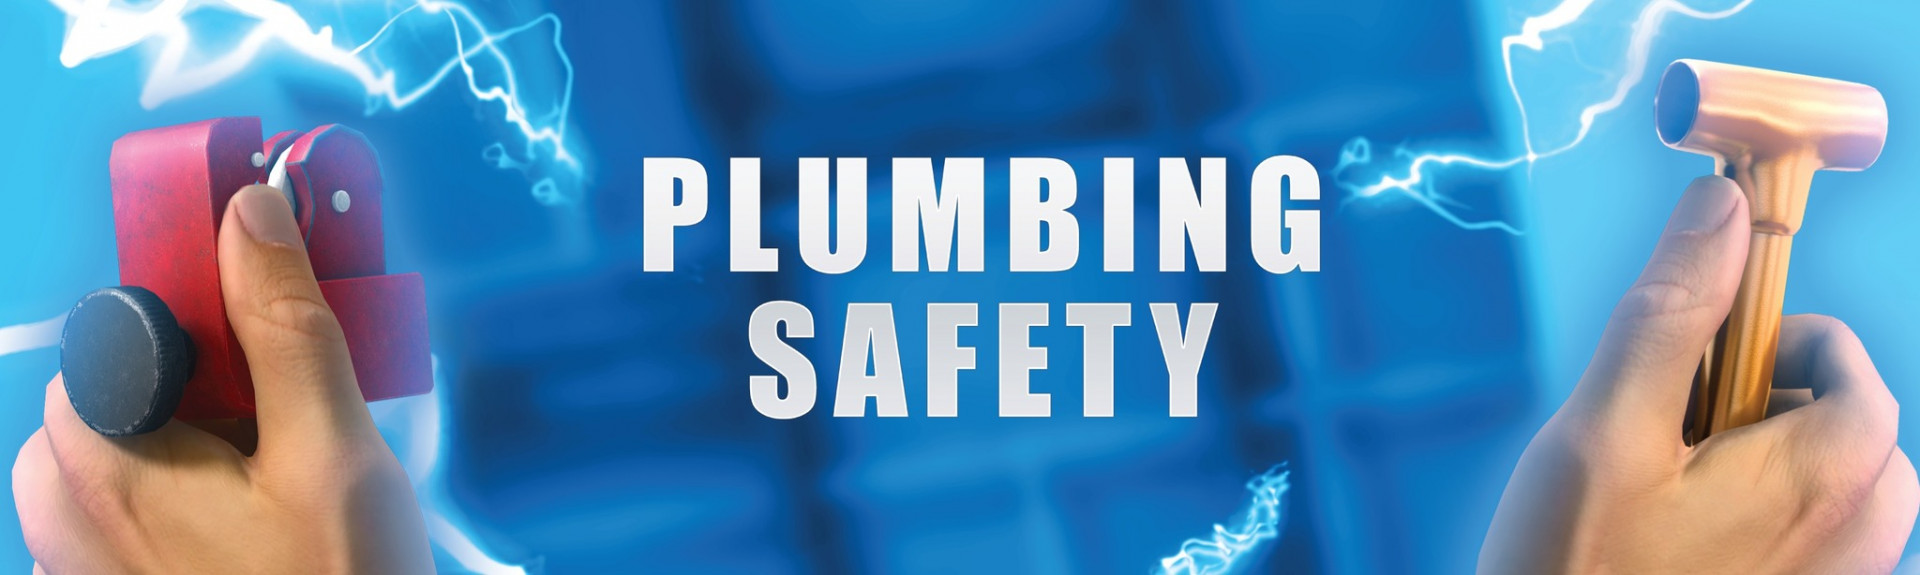 Plumbing Safety